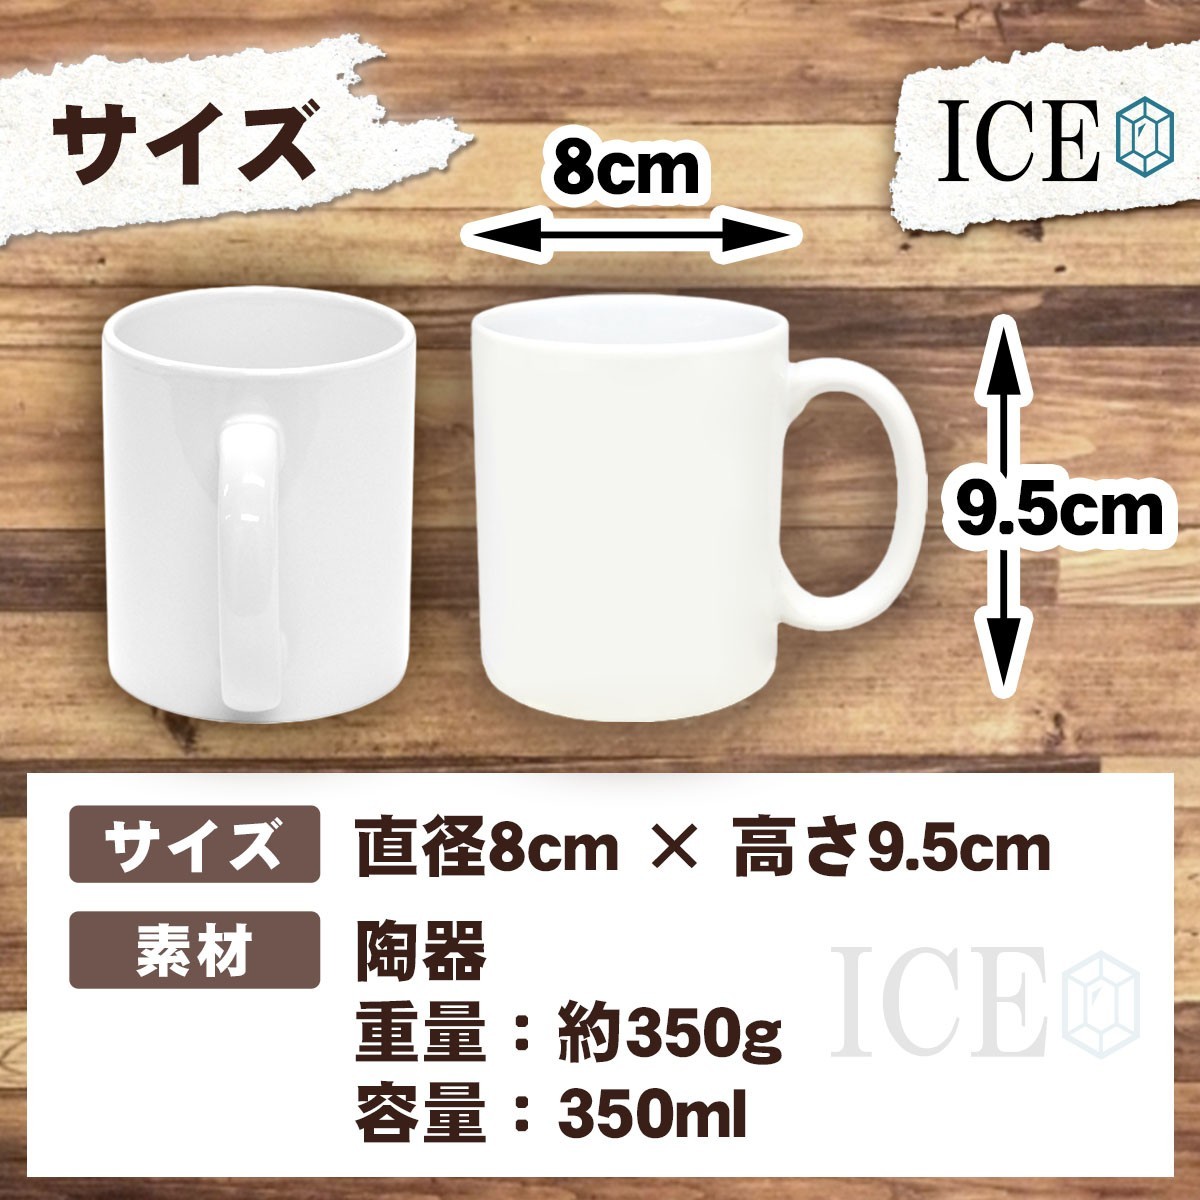 袴 猿 おもしろ マグカップ コップ 陶器 可愛い かわいい 白 シンプル かわいい カッコイイ シュール 面白い ジョーク ゆるい プレゼント_画像4